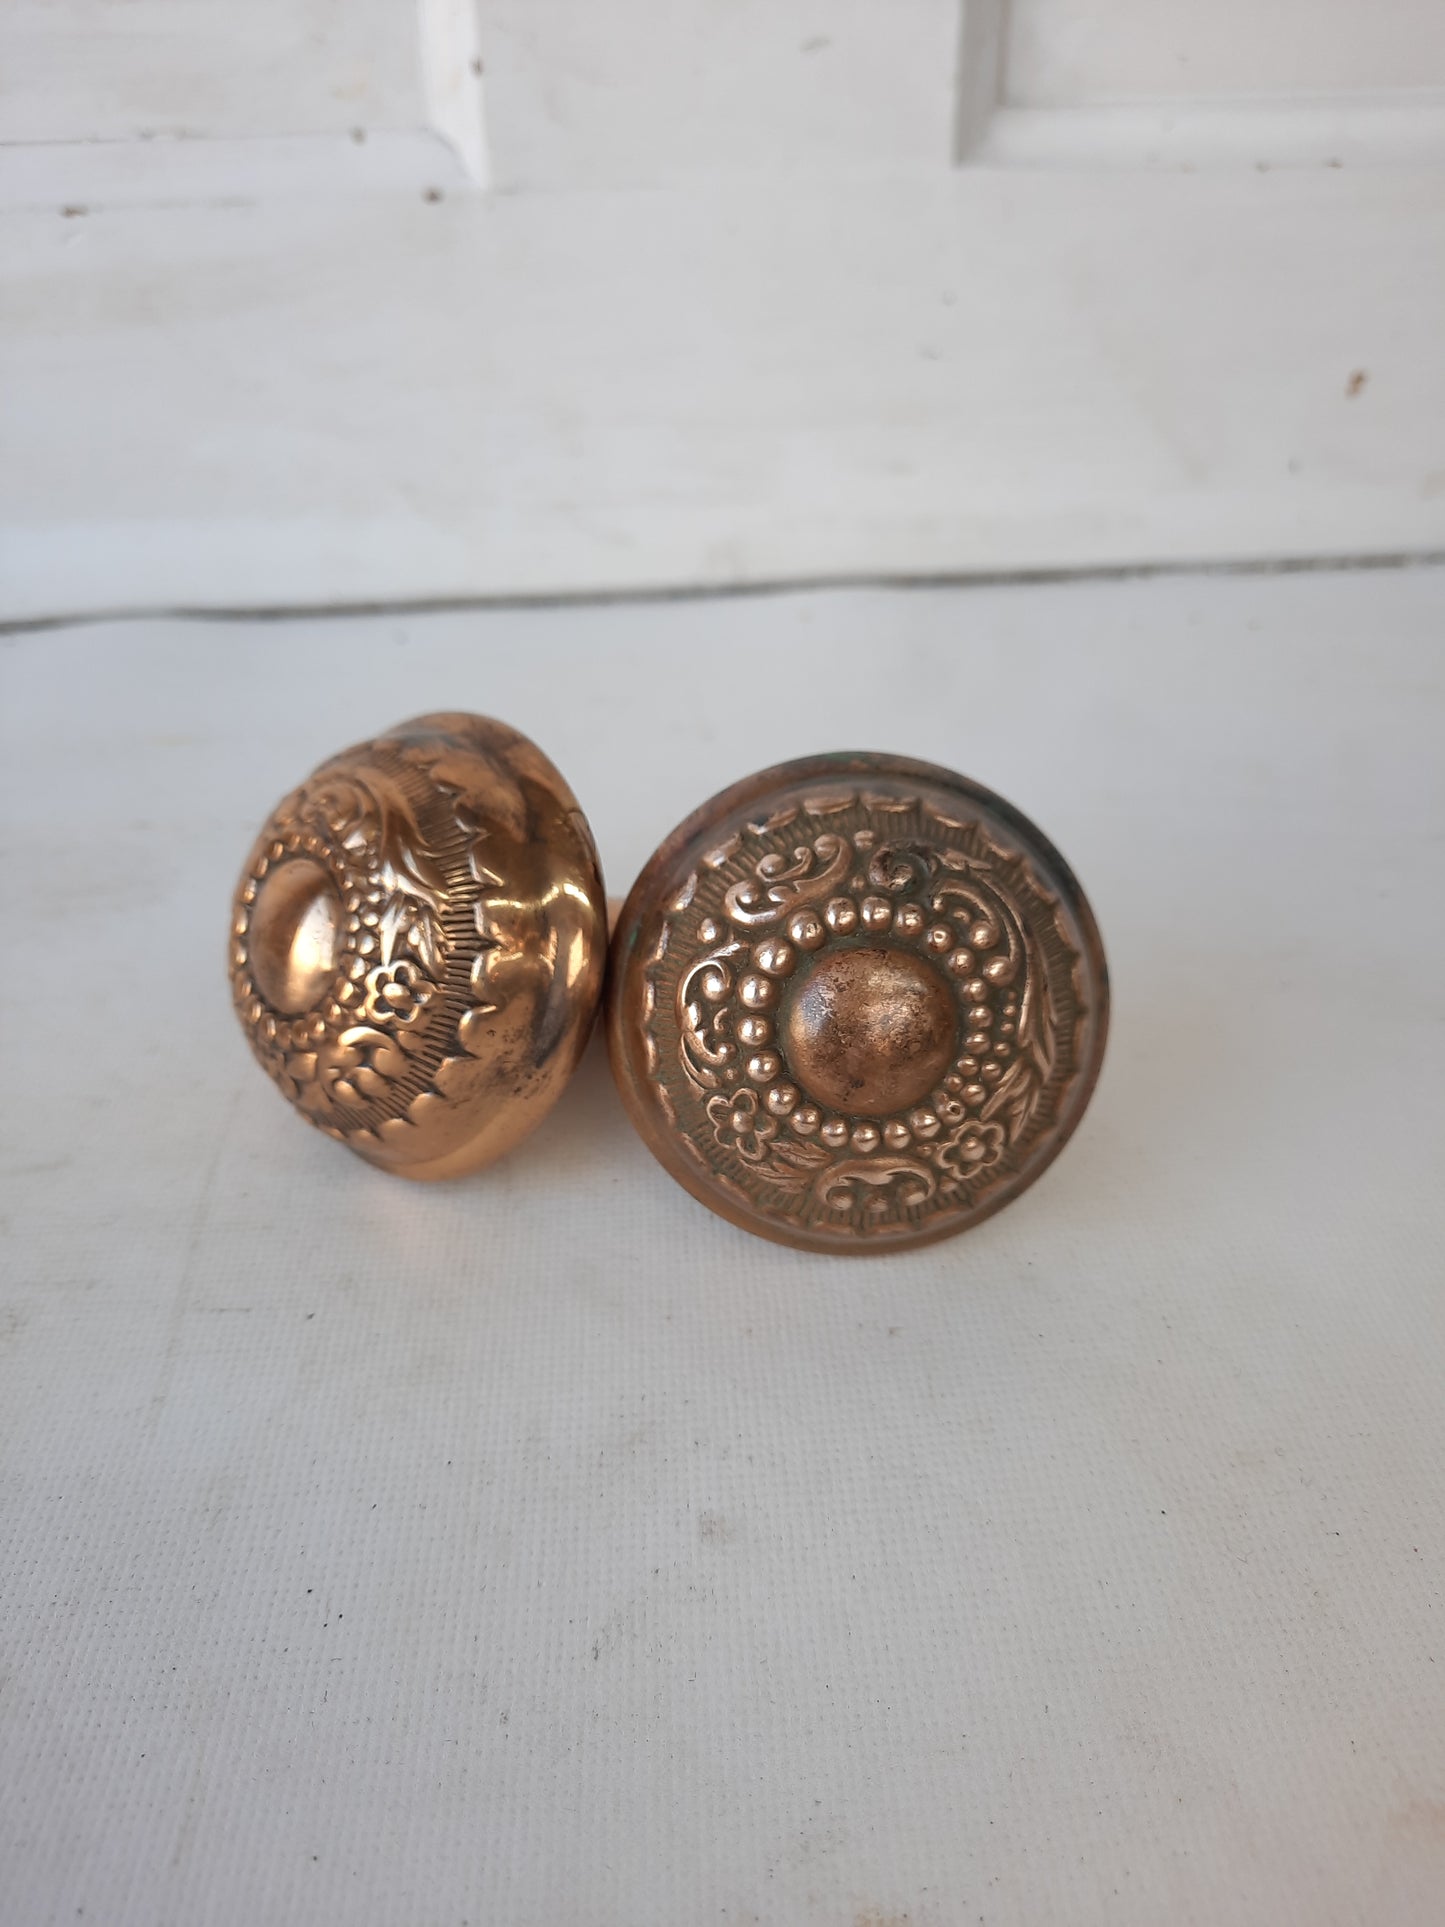 Arabian Pattern Doorknobs by Russell Erwin, Antique Wrought Bronze Fancy Door Knobs 010211